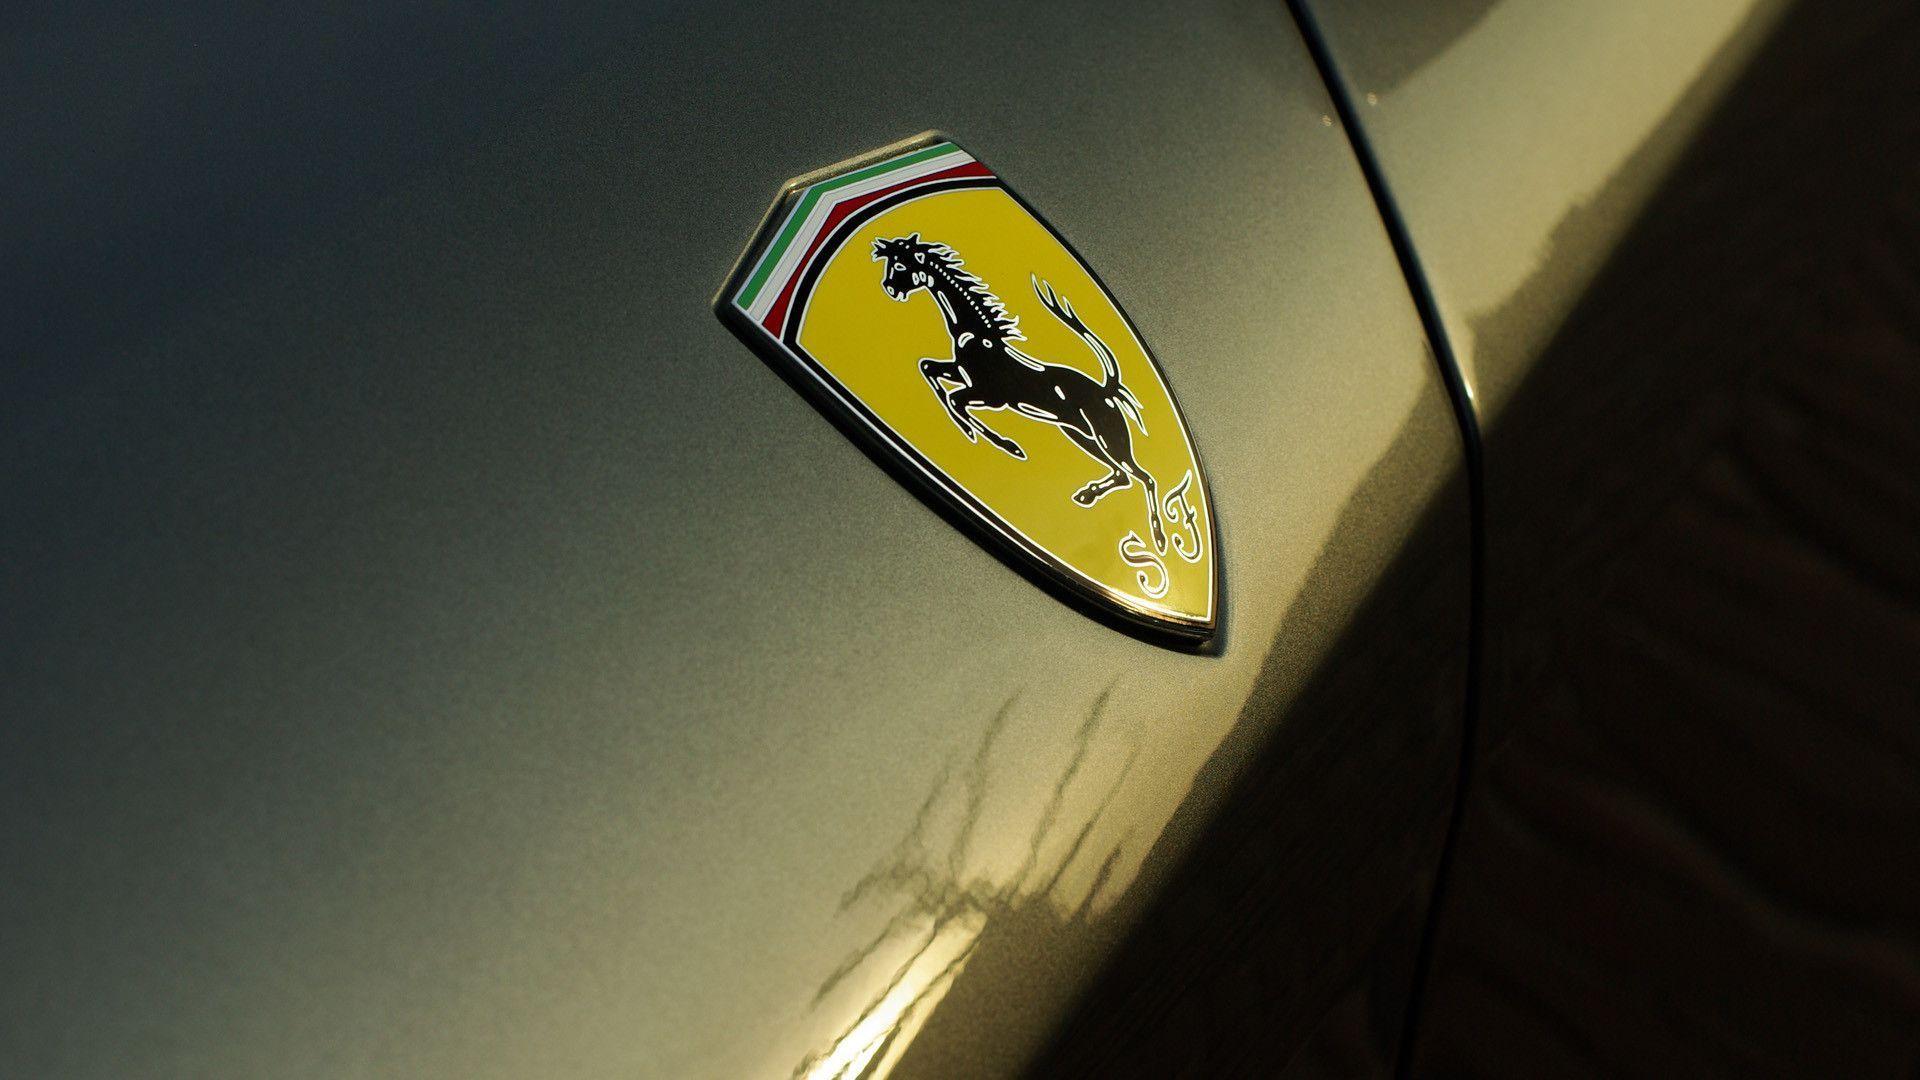 Wallpaper: Ferrari 612 Scaglietti badge